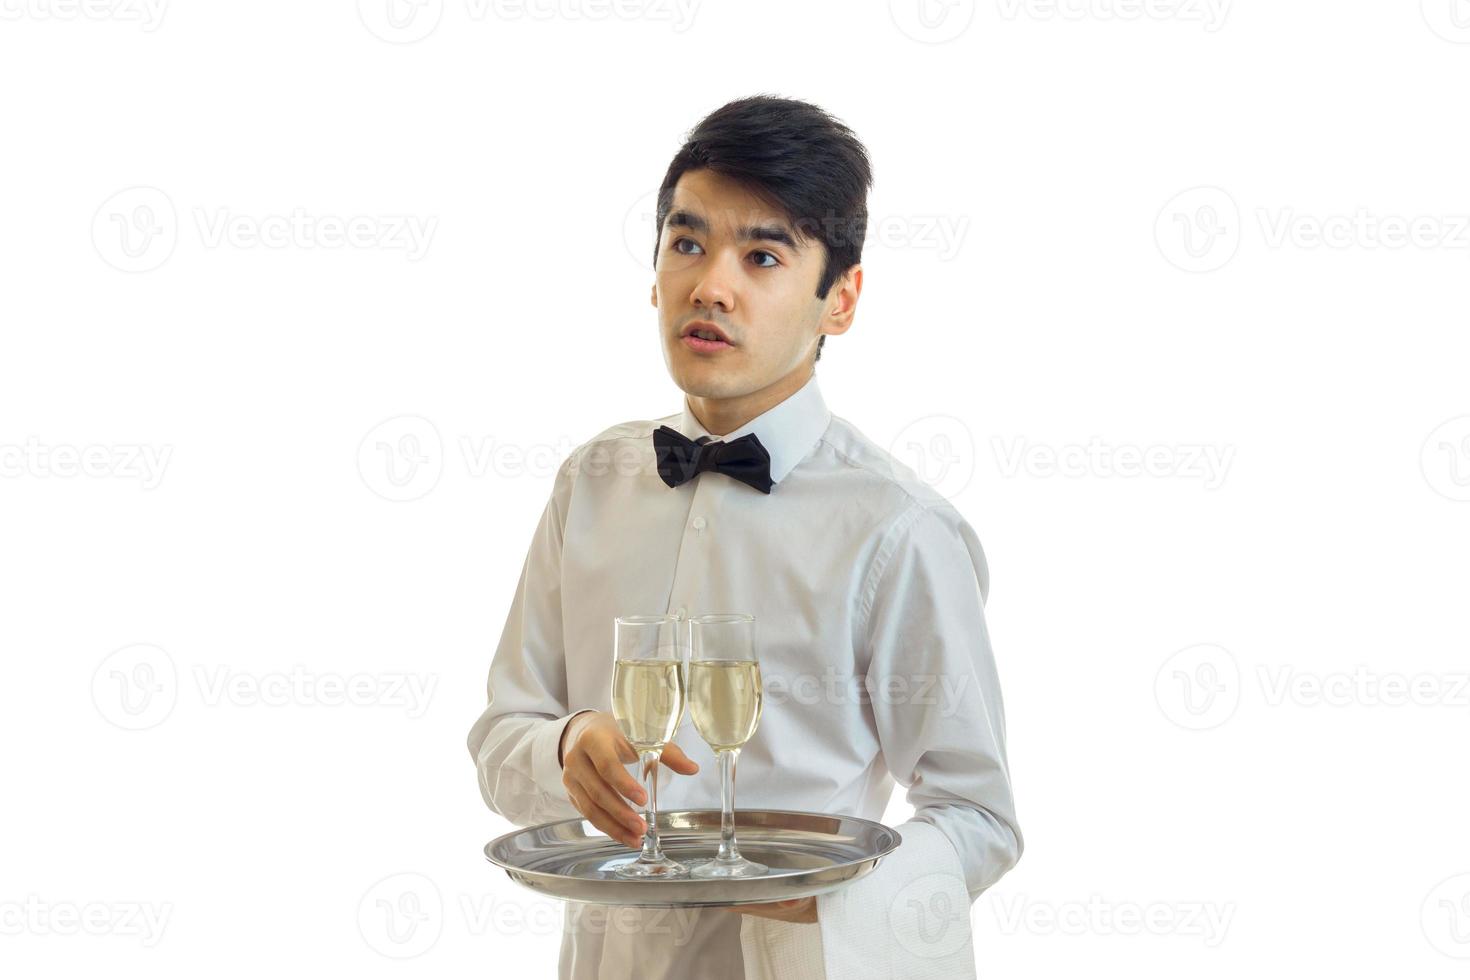 le jeune serveur détourne le regard et prend le plateau à billes avec une coupe de champagne photo